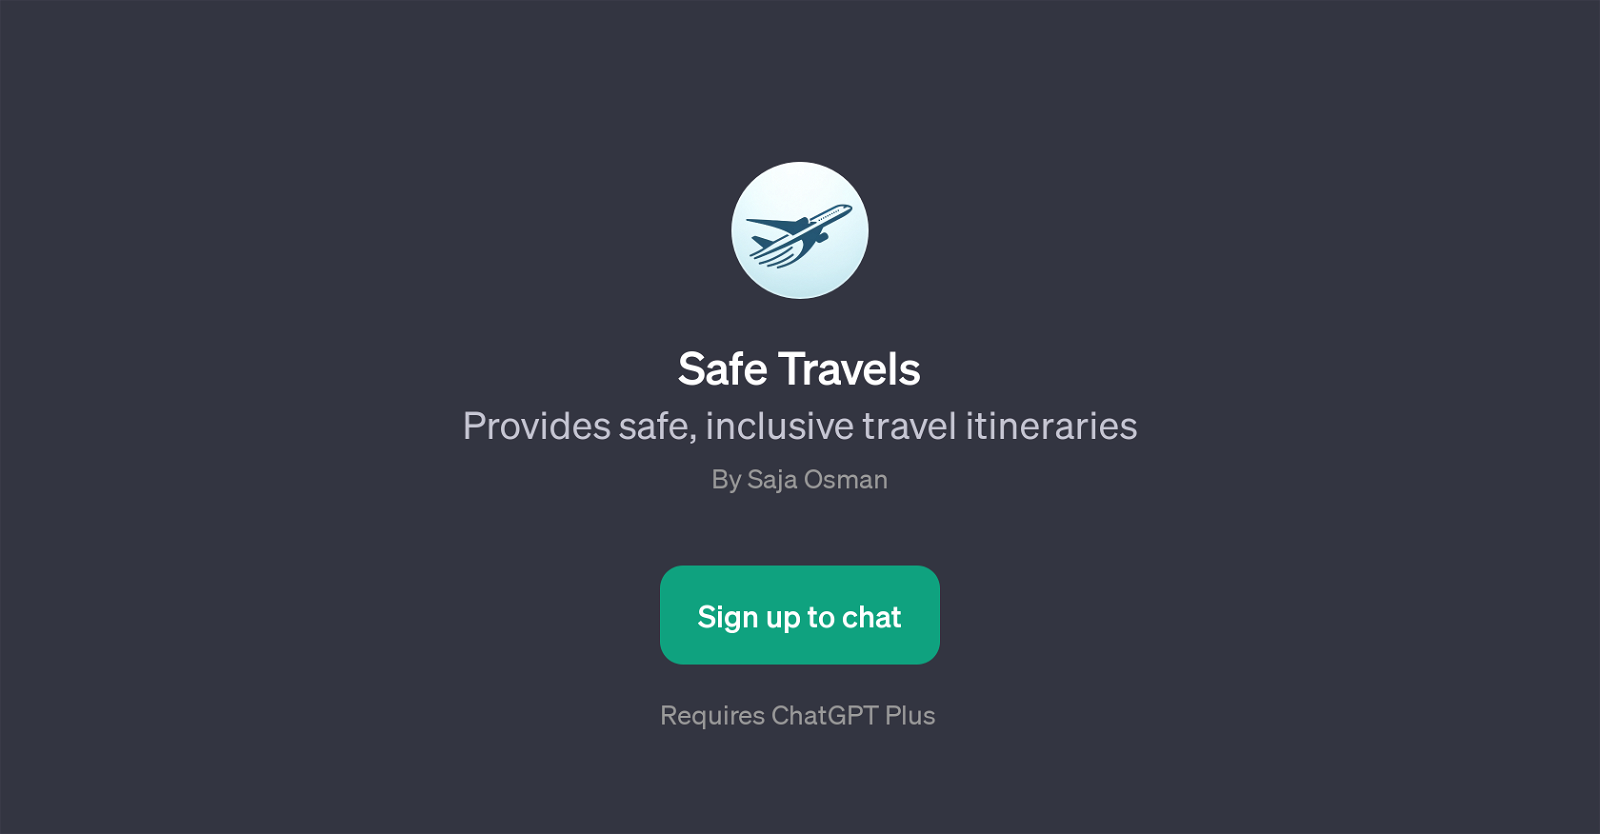 Safe Travels website